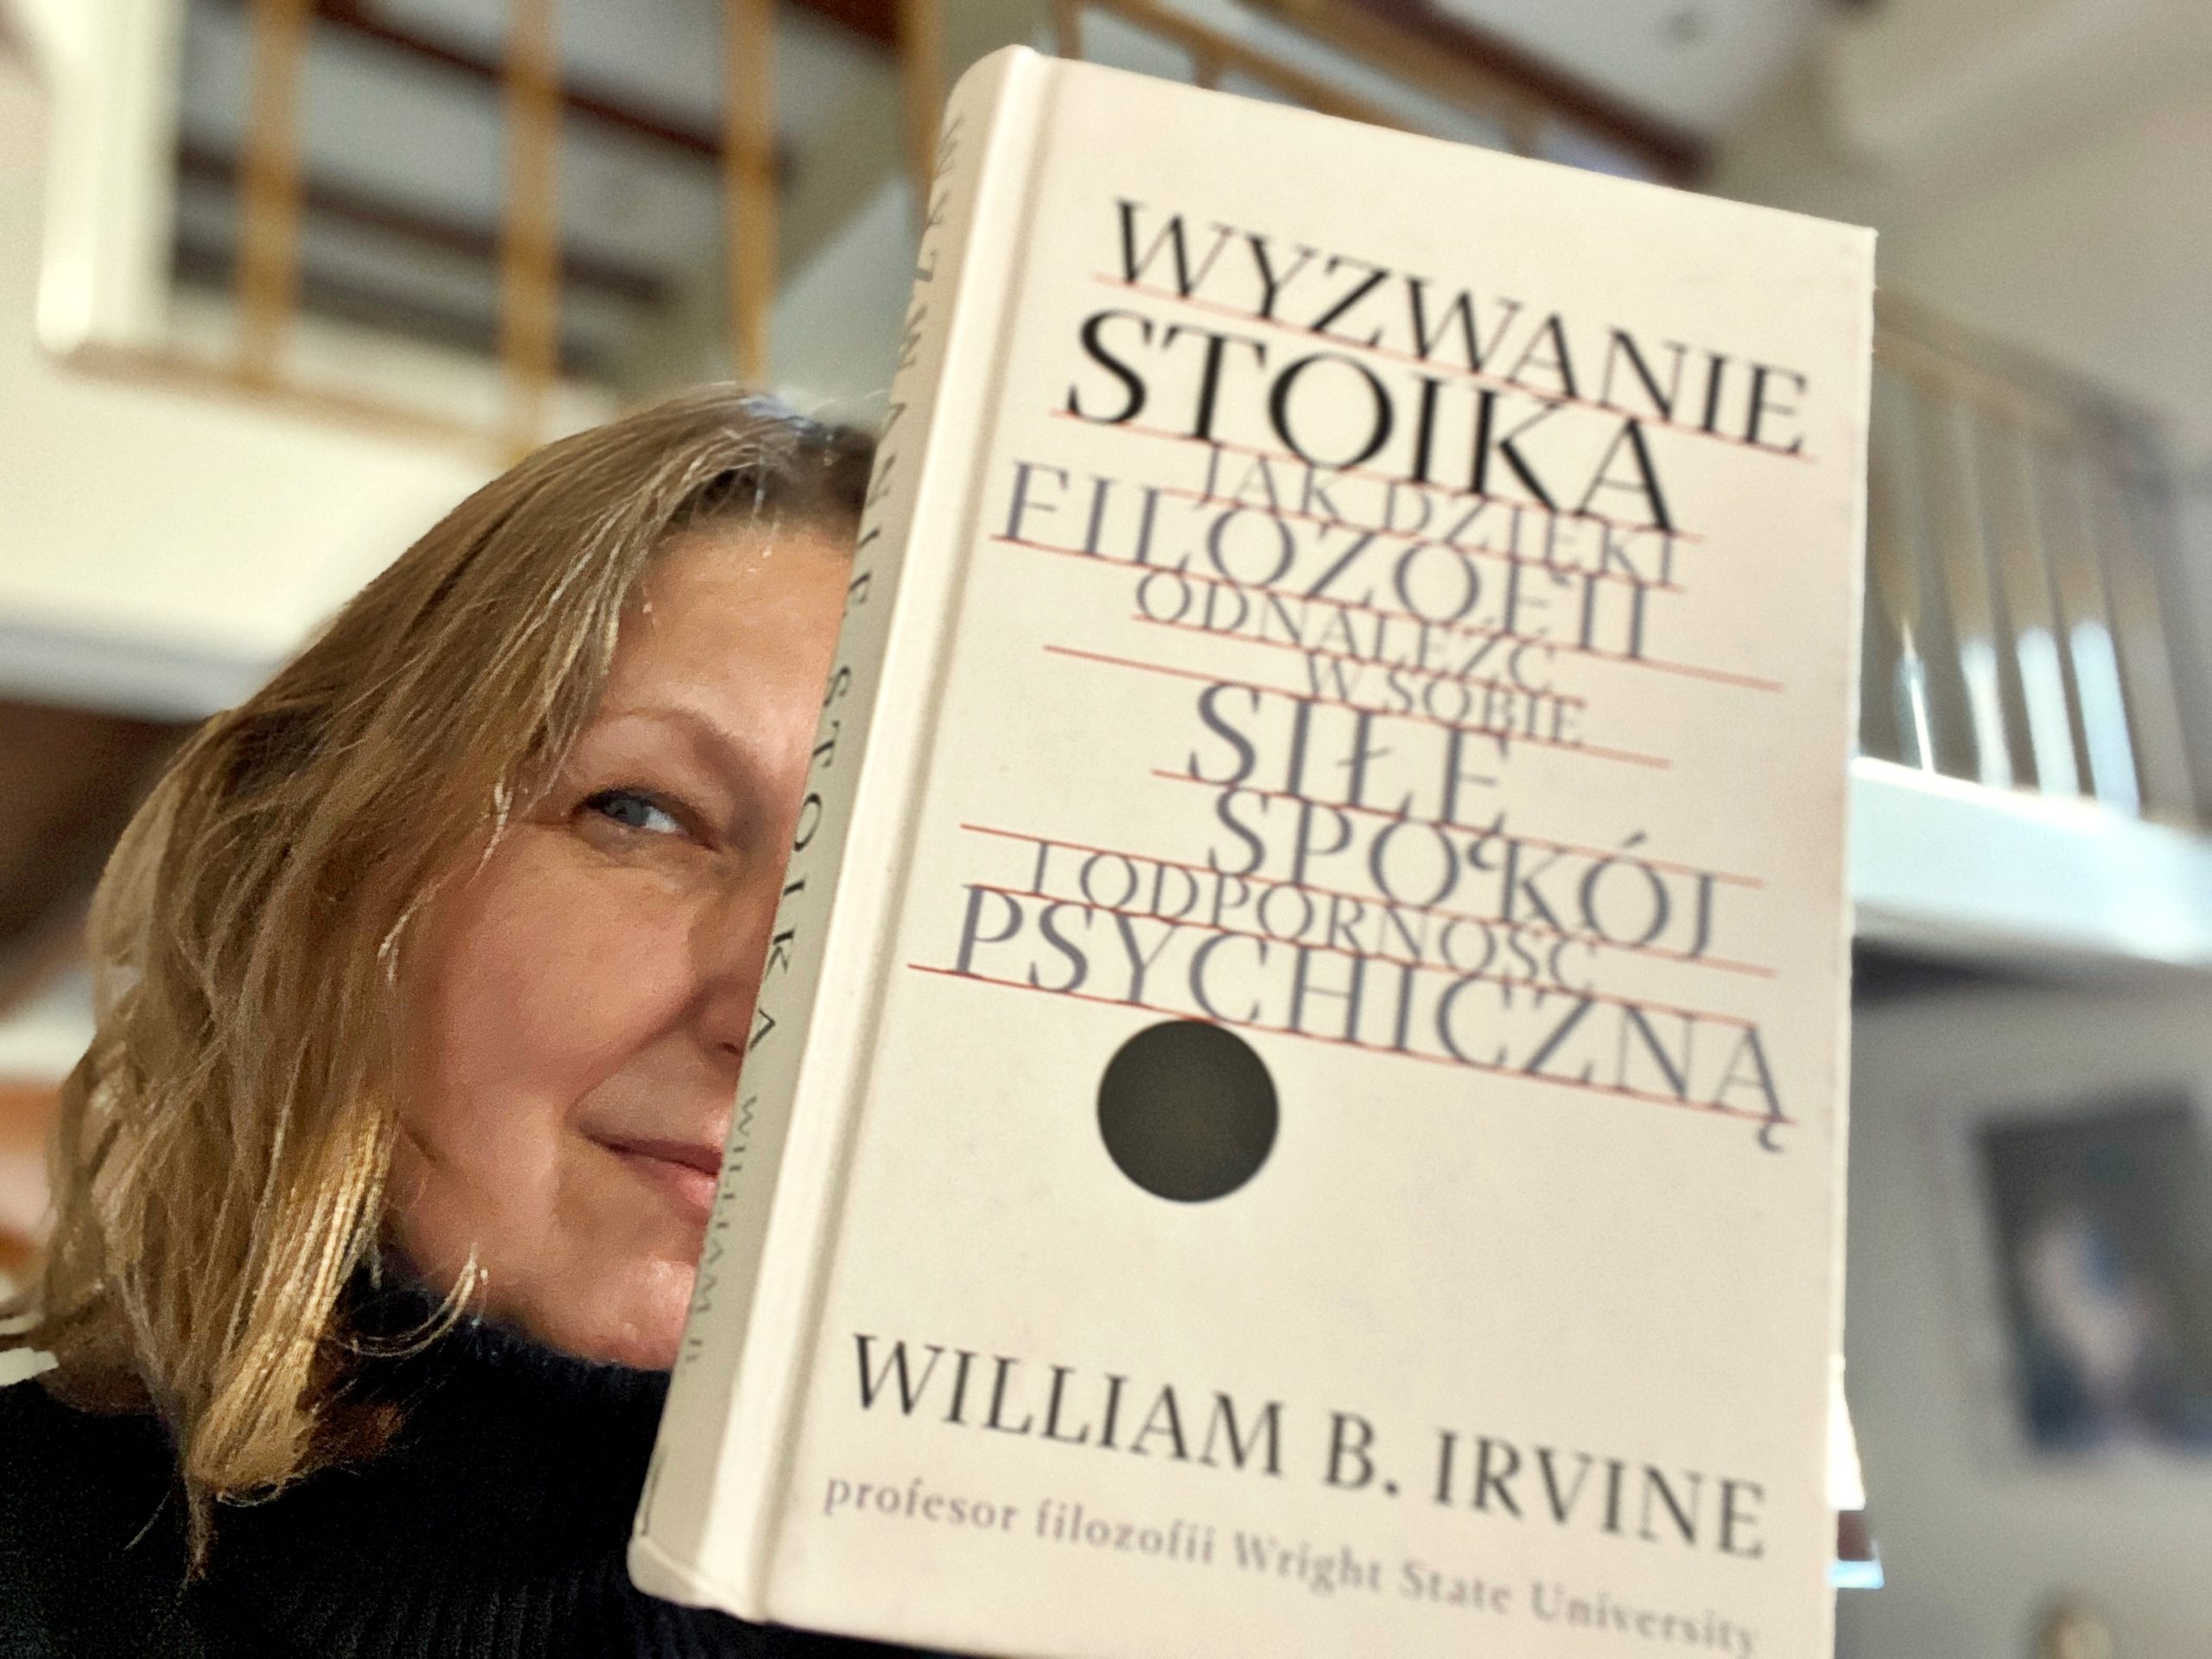 William B. Irvine “Wyzwanie stoika”